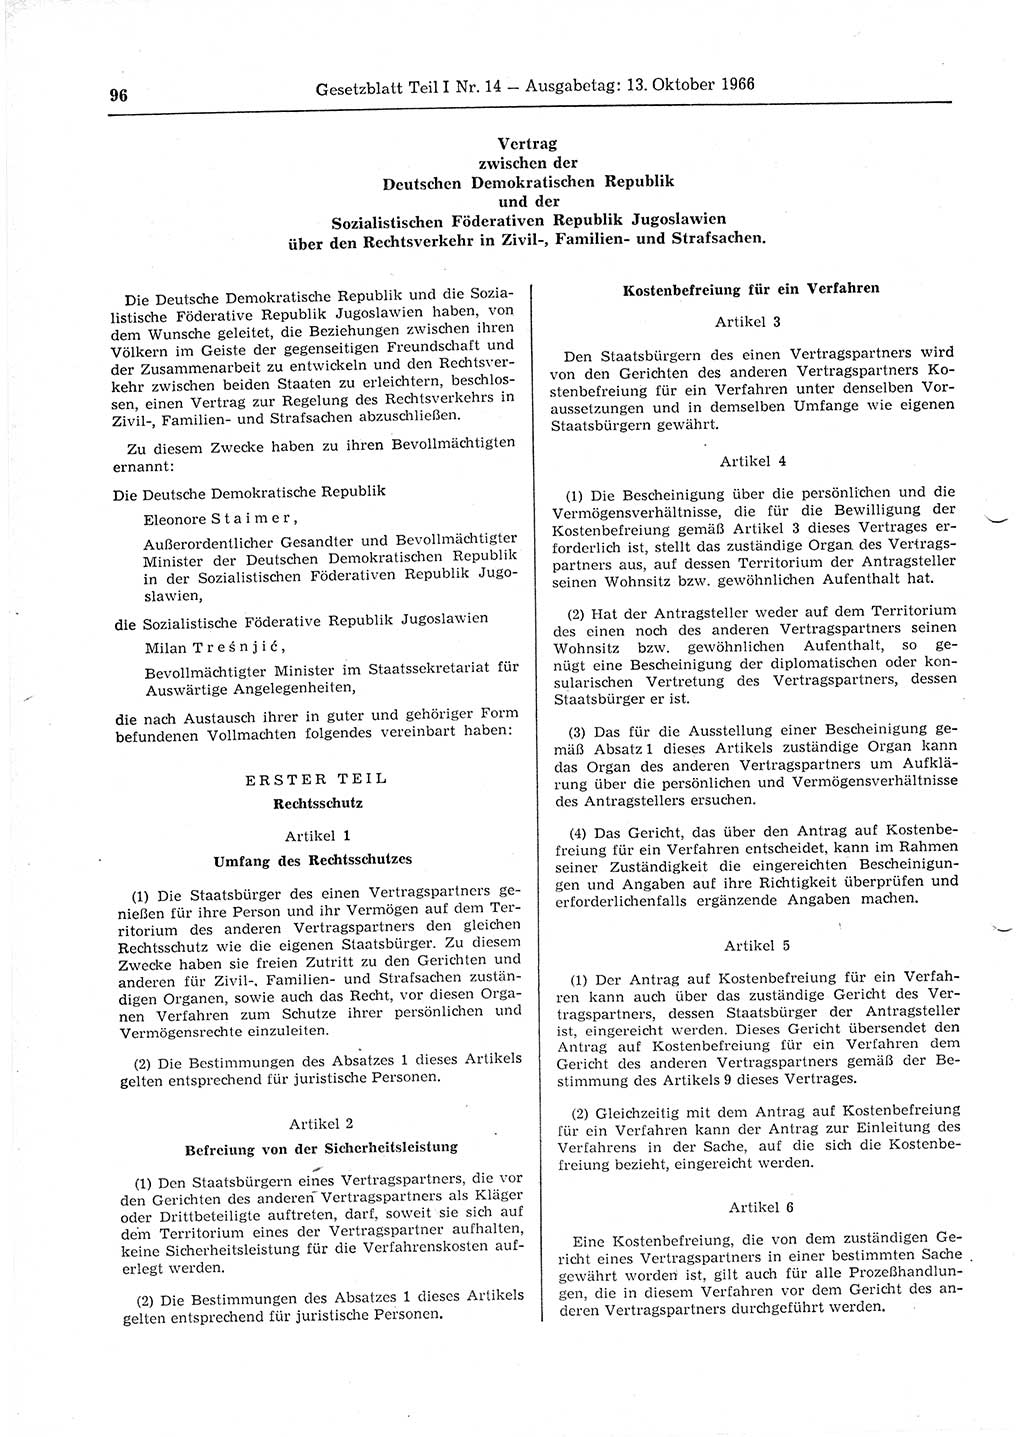 Gesetzblatt (GBl.) der Deutschen Demokratischen Republik (DDR) Teil Ⅰ 1966, Seite 96 (GBl. DDR Ⅰ 1966, S. 96)